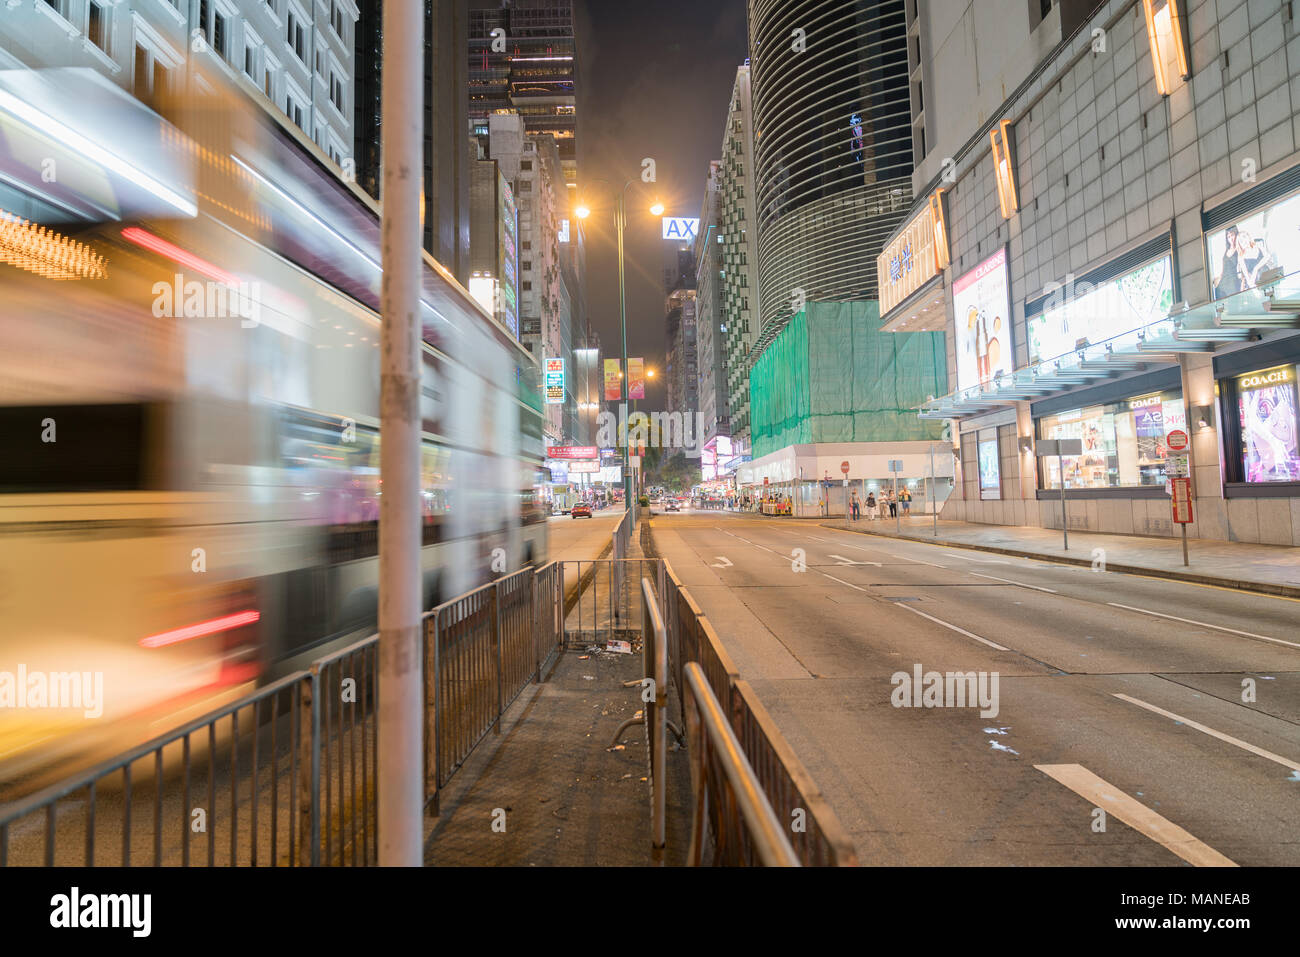 KOWLOON, HONG KONG - 19 settembre 2017; tipicamente città asiatiche street sotto le luci della notte la ricerca di Nathan Road come bus in motion blur passa nel centro cittadino Foto Stock